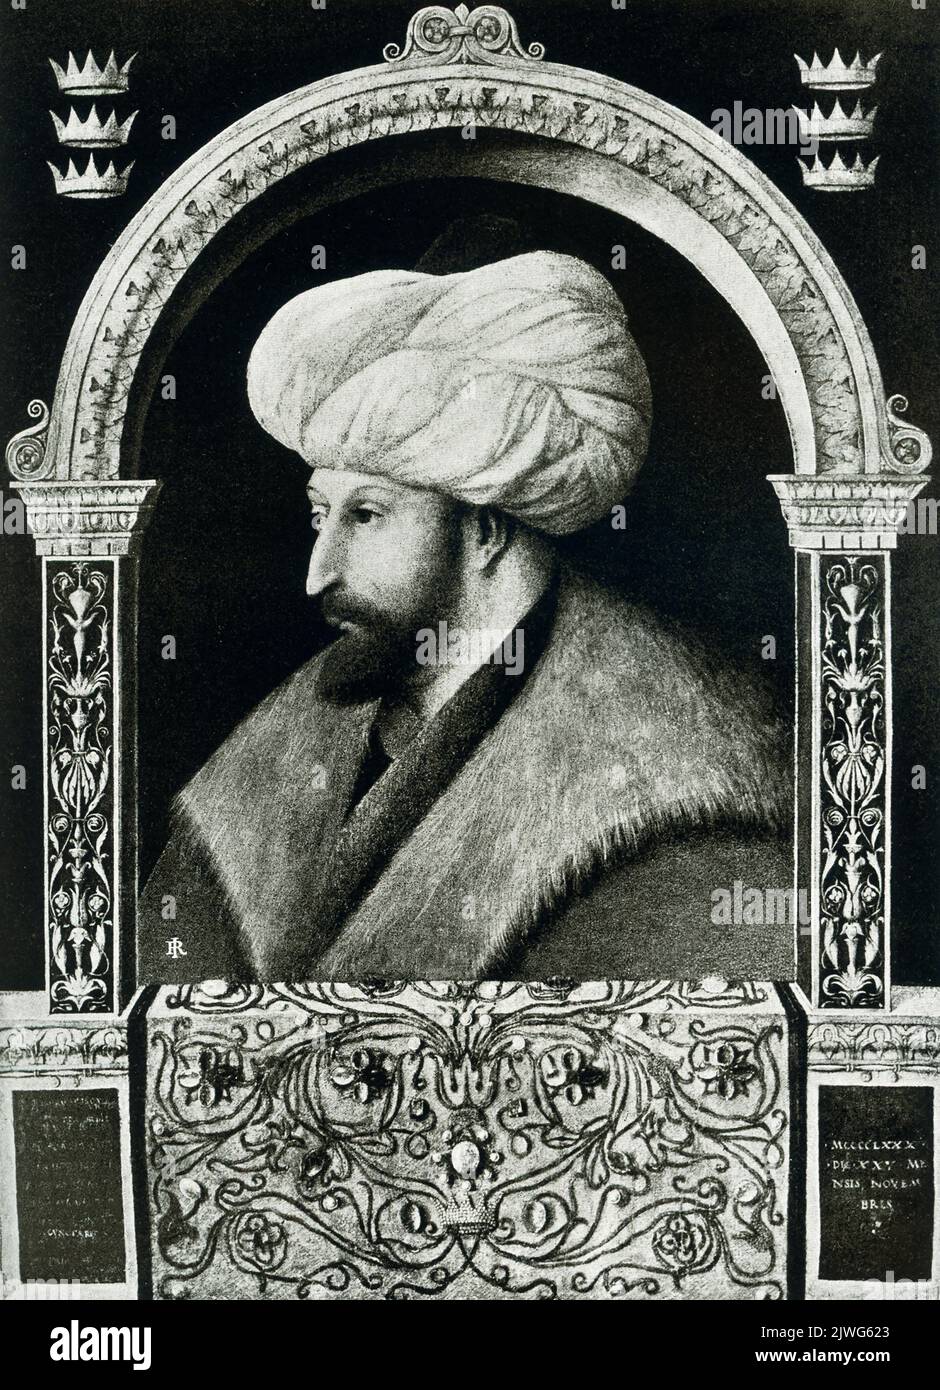 La légende de cette image de 1910 est la suivante : « The Sultan Muhammed II Peint par Gentile Bellini --- aujourd'hui abrité à Rome. » Mohammed II (1432-1481), appelé foi ou Conquérant, était le sultan turc ottoman de 1451 à 1481. Sa conquête de Constantinople en 1453 garantit la consolidation de l'Empire ottoman. Banque D'Images